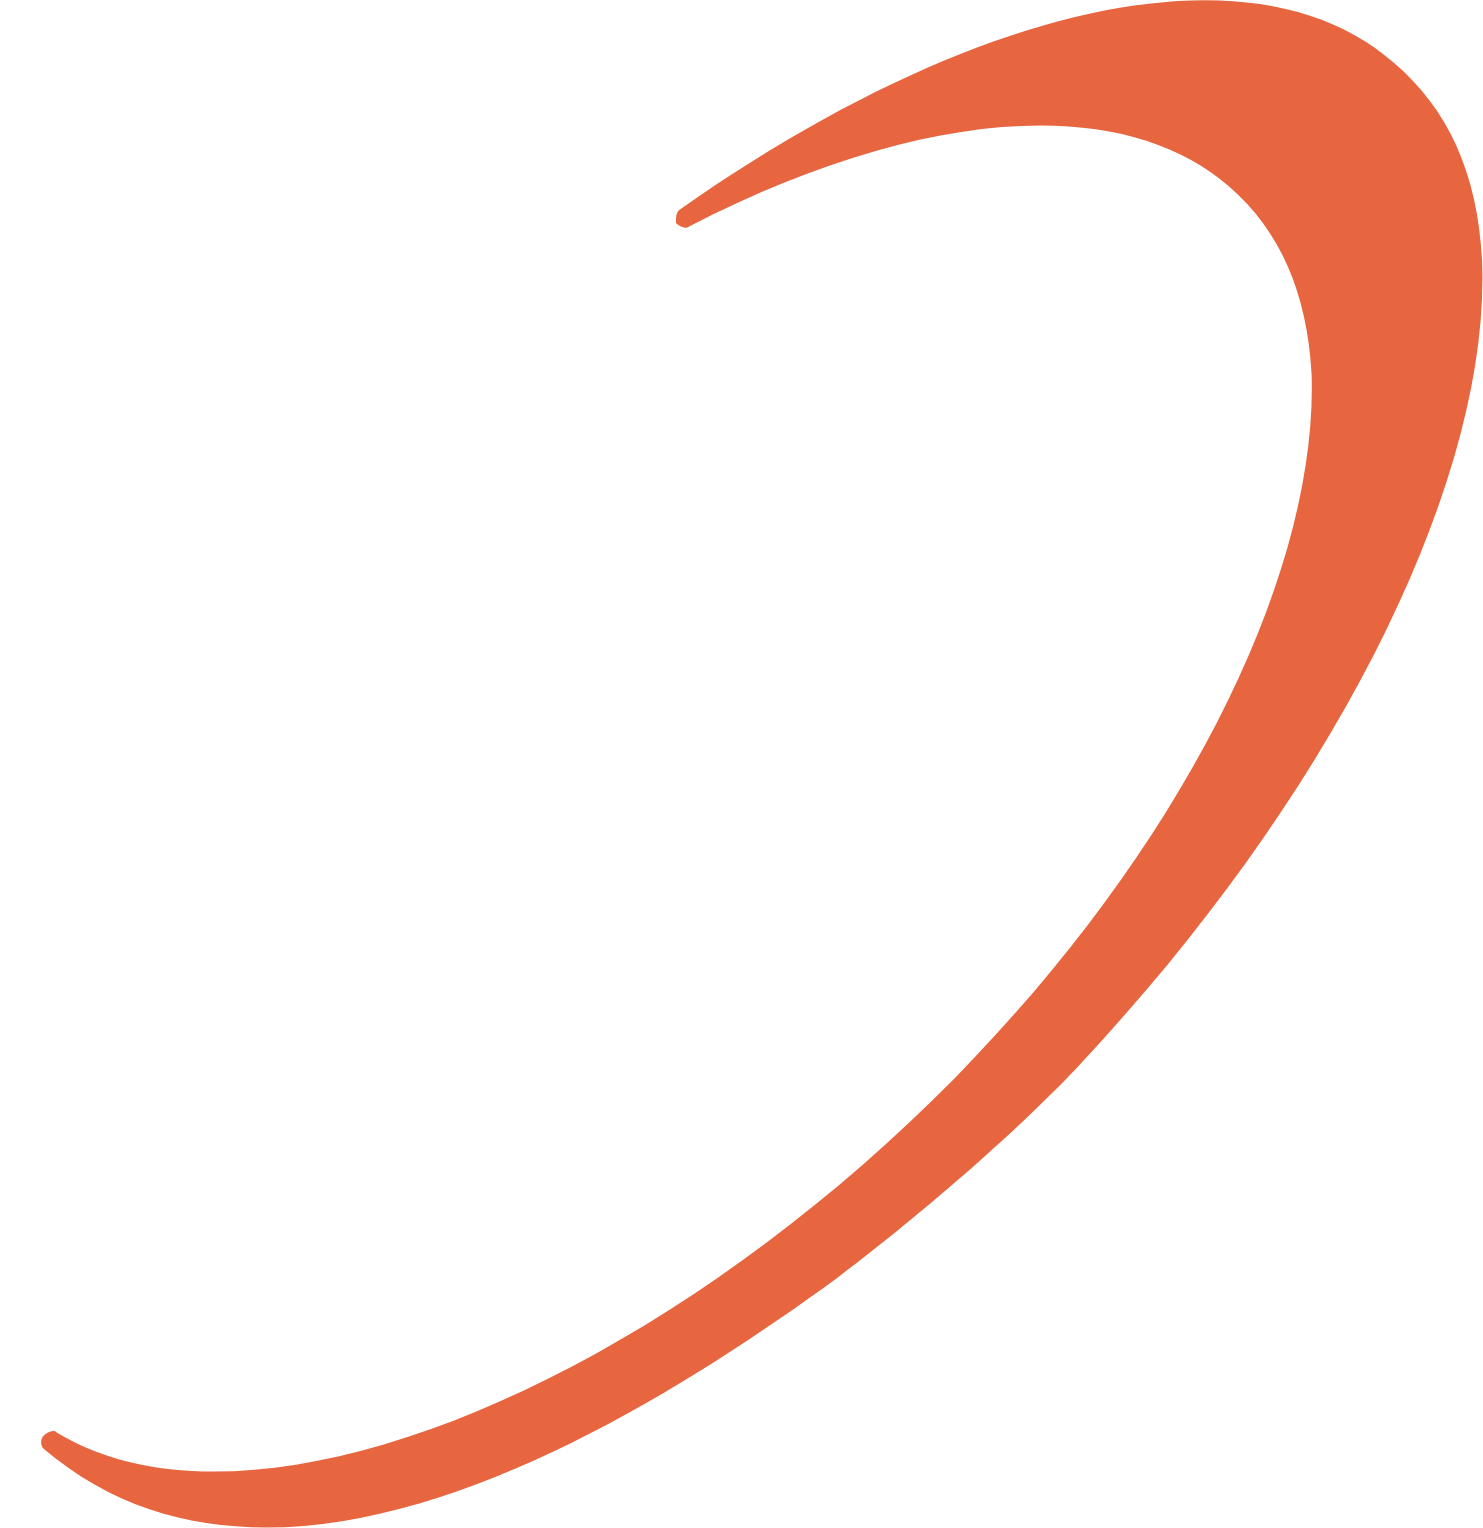 Orchestra BioMed  logo for dark backgrounds (transparent PNG)